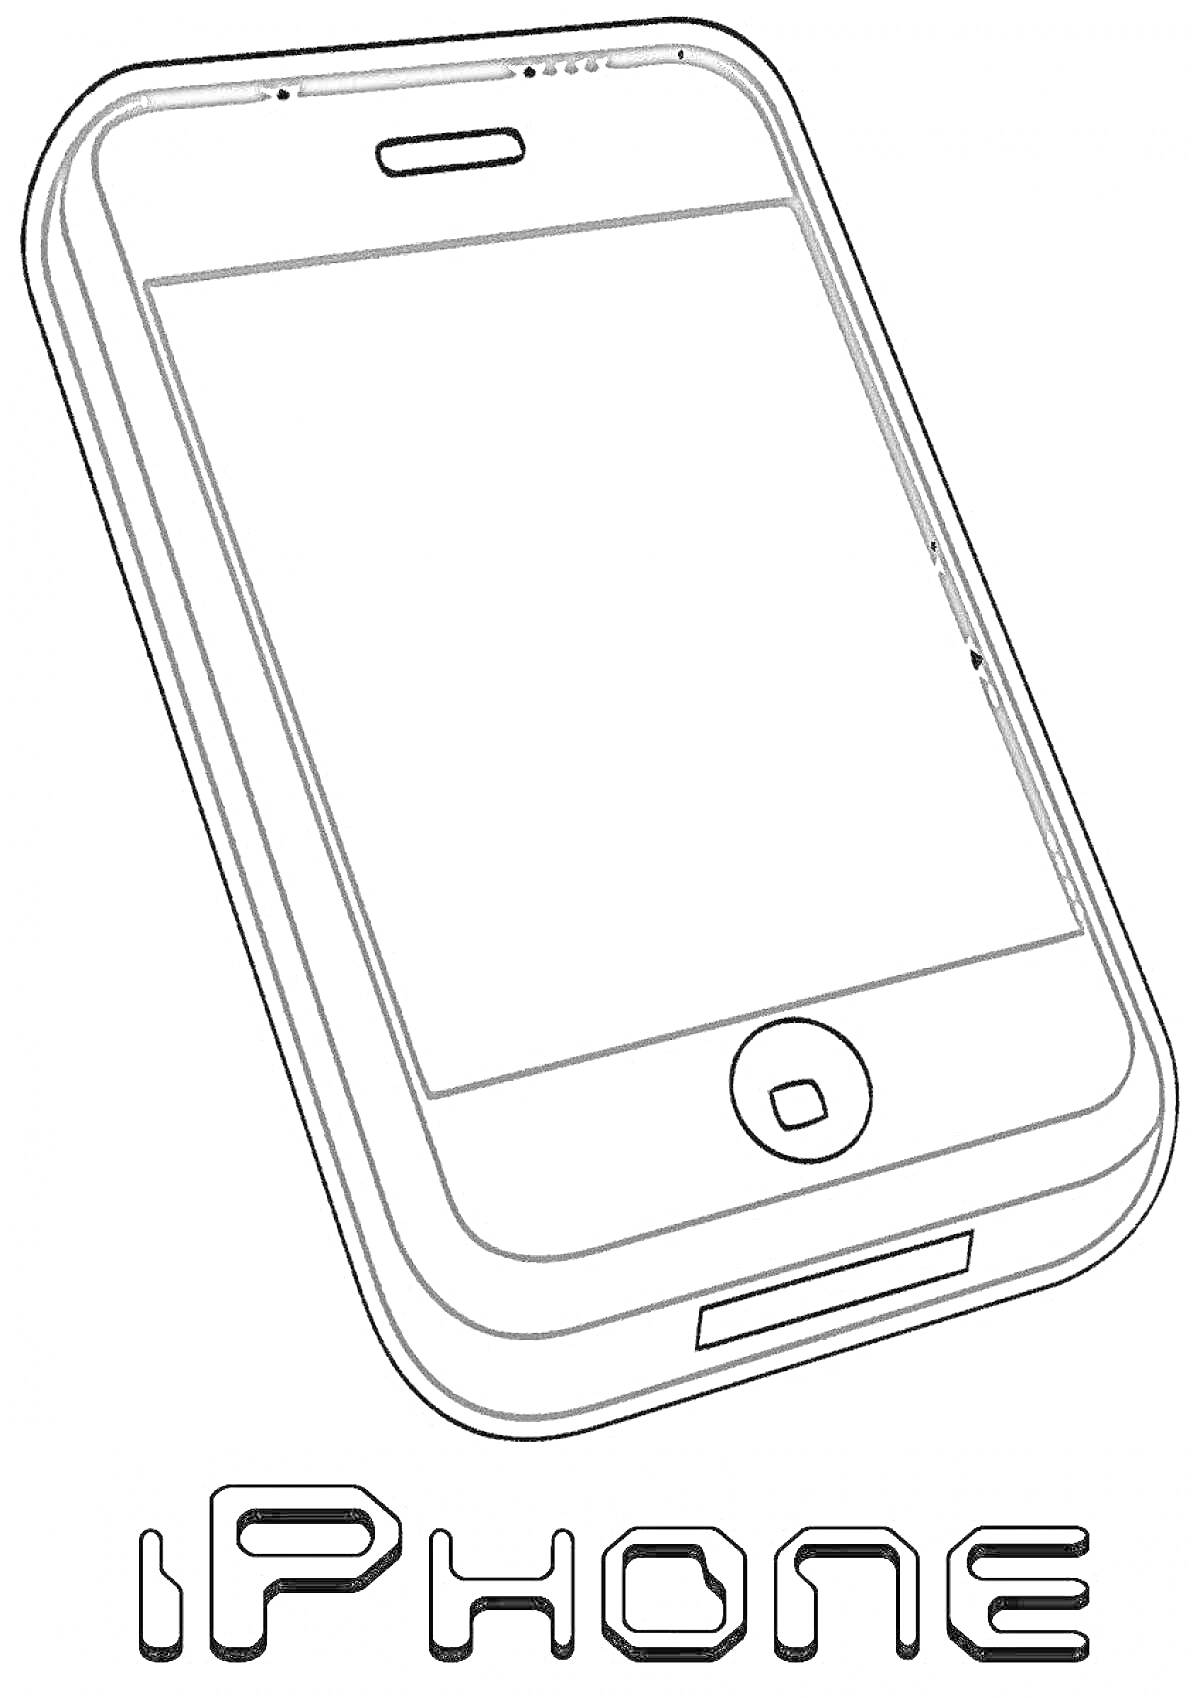 Раскраска Айфон с кнопками и экраном, надпись iPhone внизу